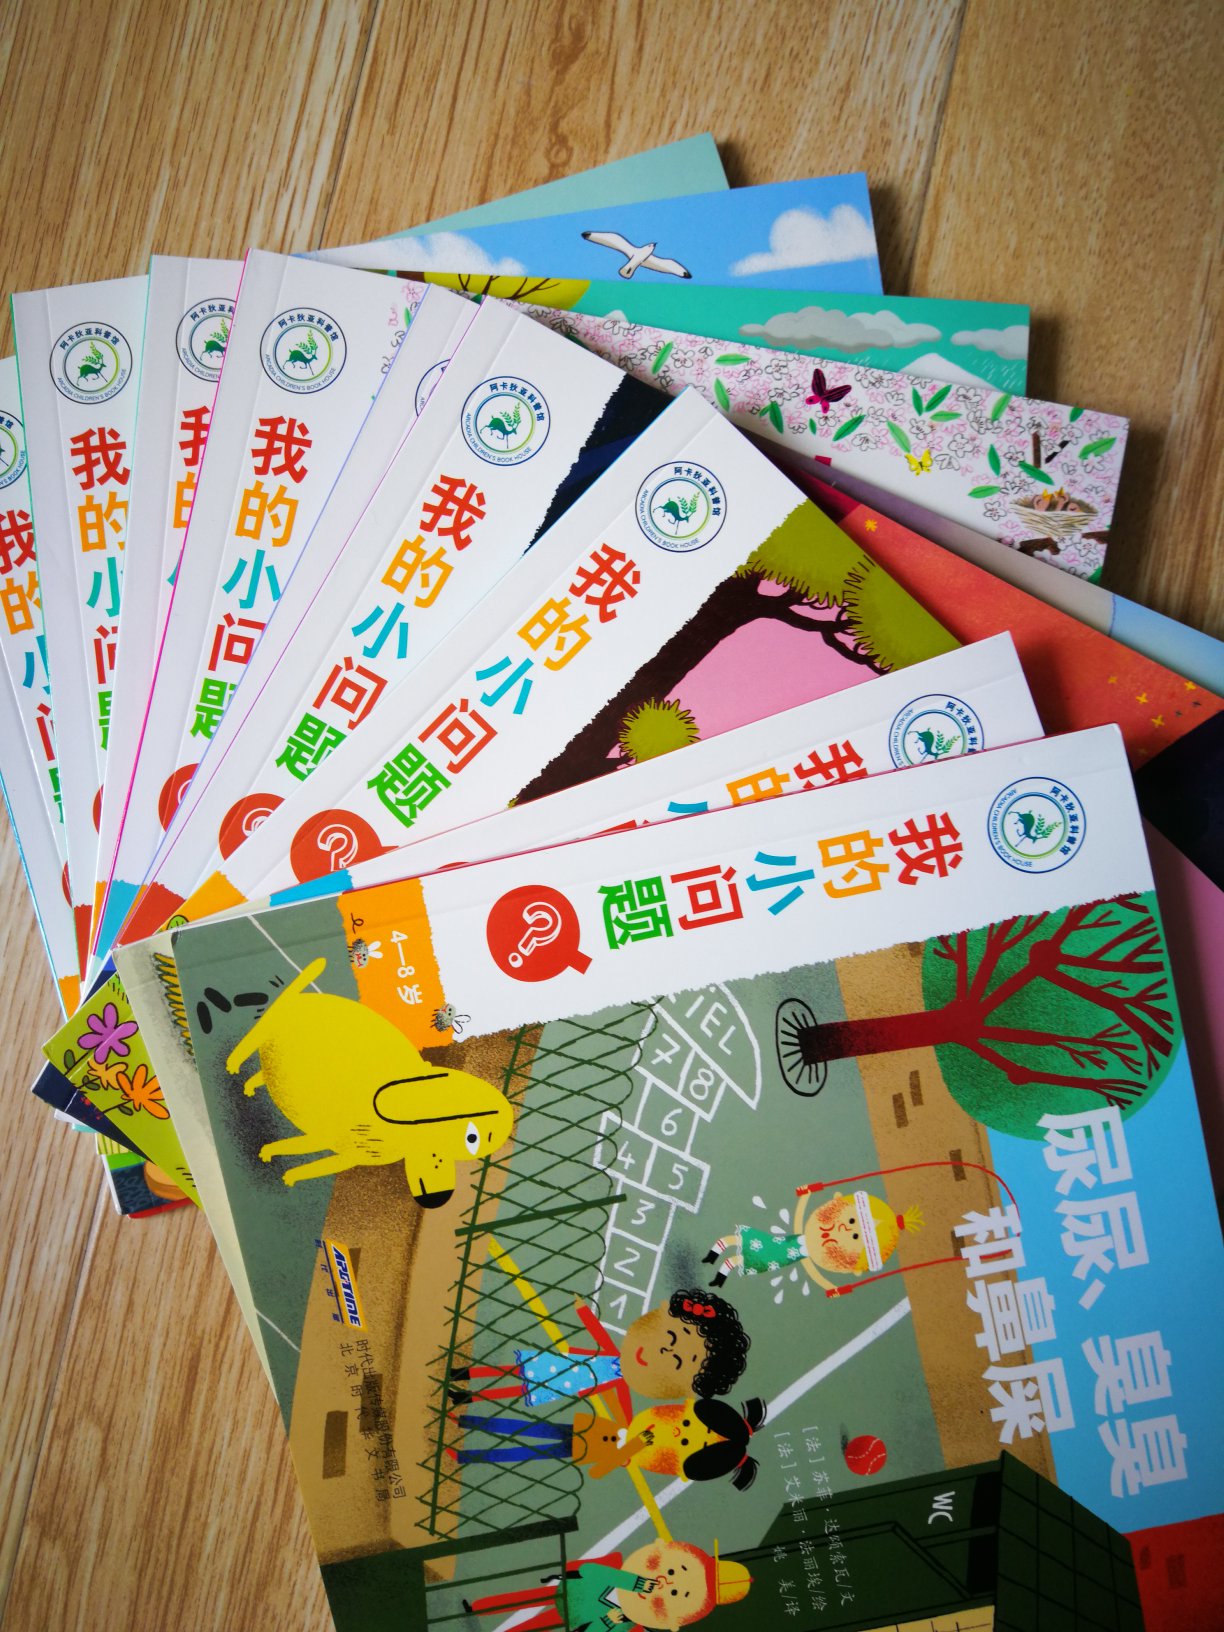 每年的618都是囤书的好时候。上海译文的译文纪实系列都很好。价格很好。